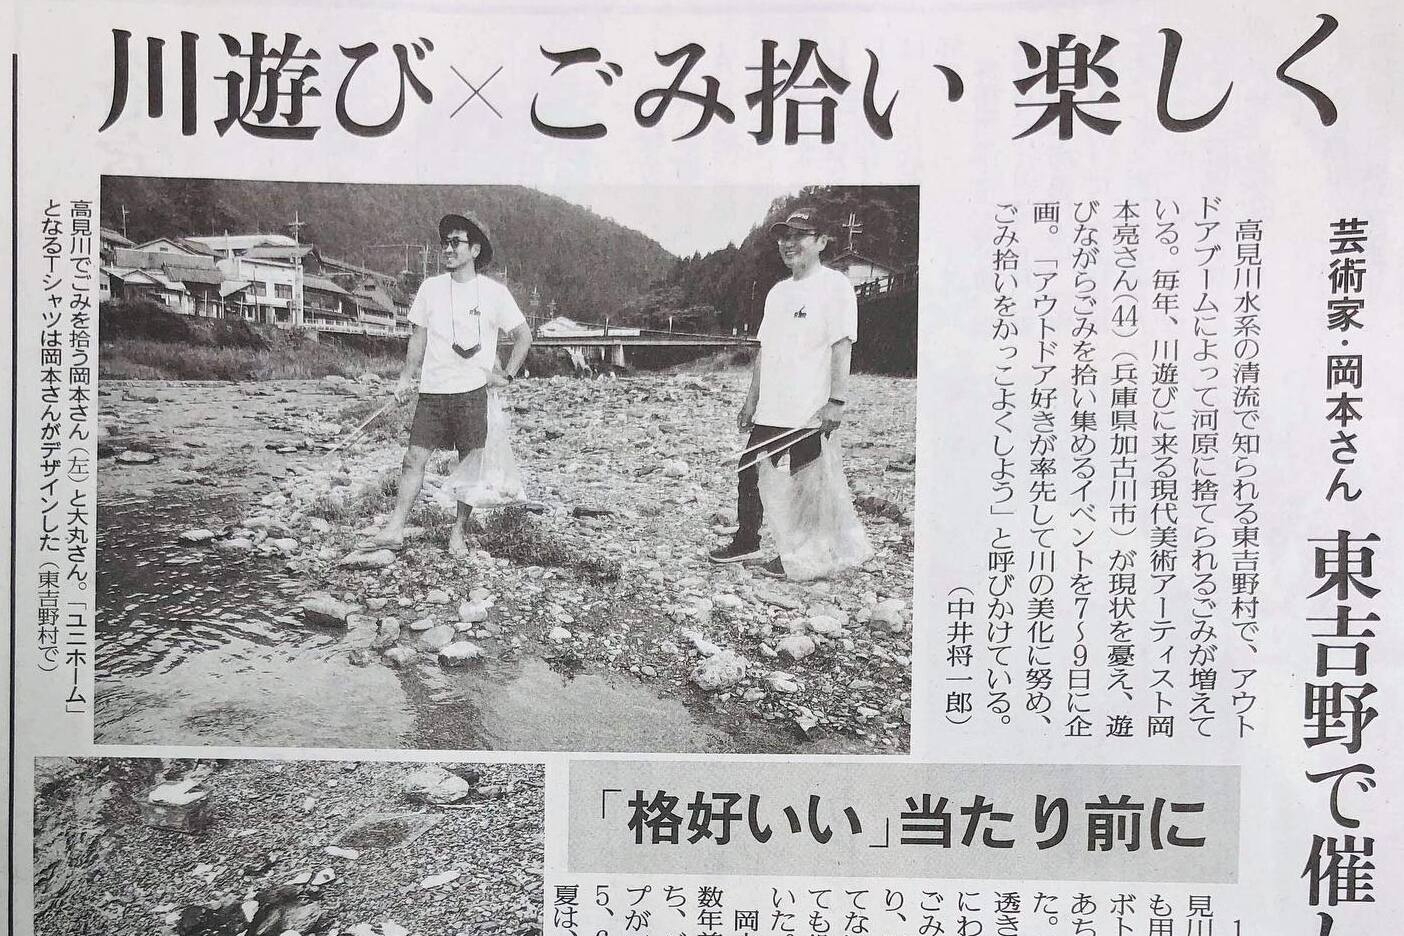 読売新聞です。大丸さんとのツーショットで川の活動で紙面に載るのは嬉しい。